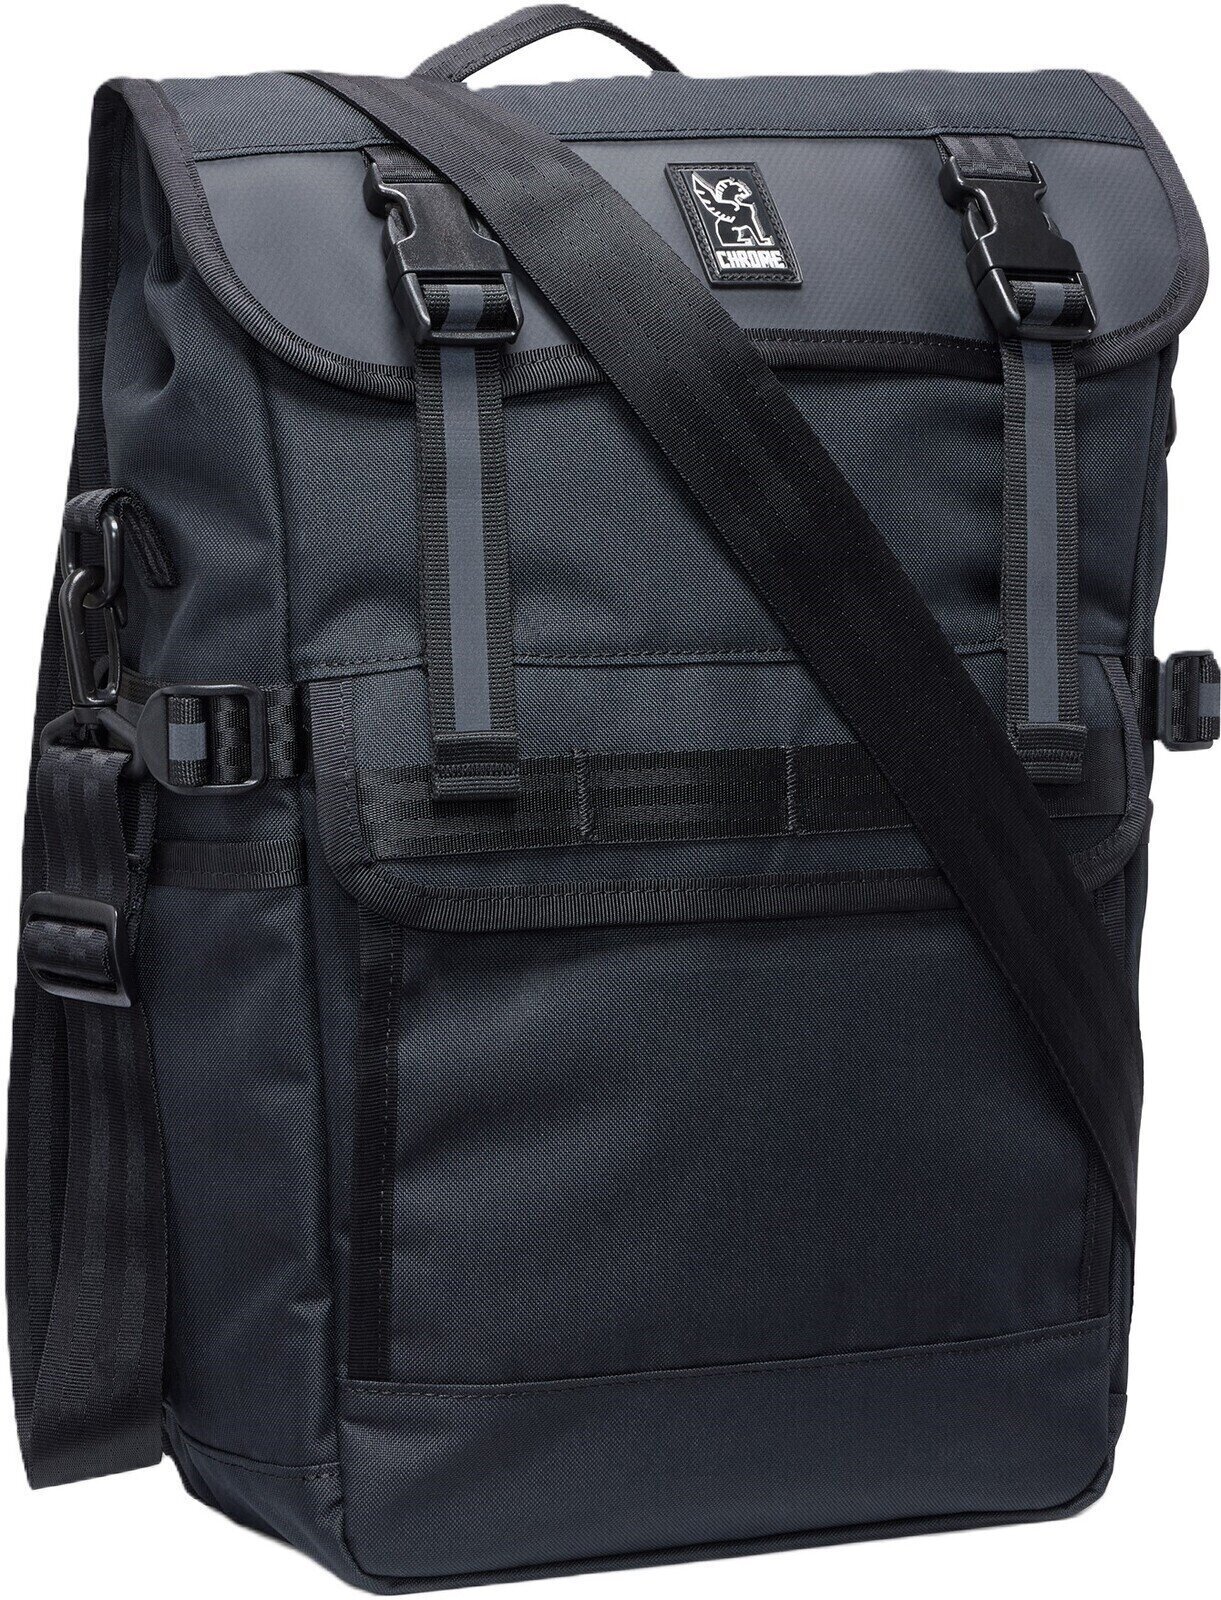 Geantă pentru bicicletă Chrome Holman Pannier Bag Black 15 - 20 L